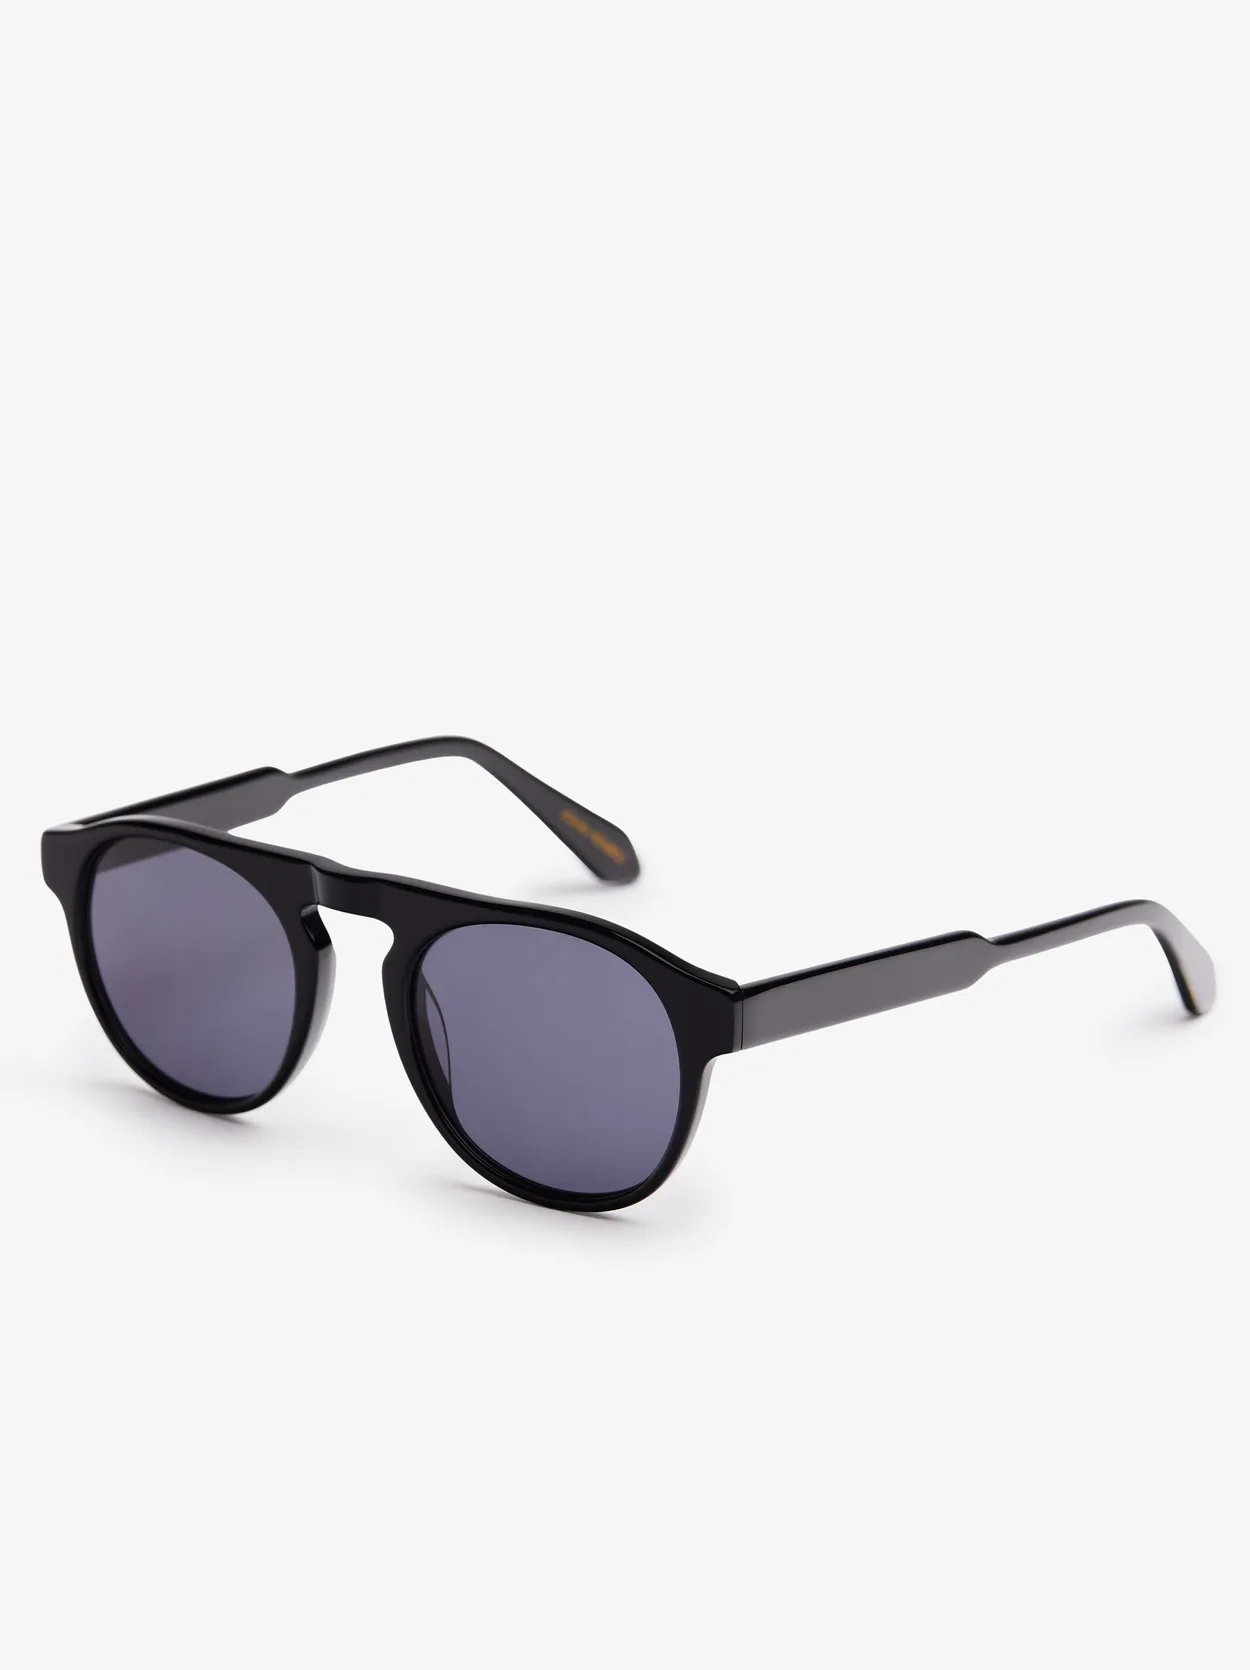 Black Sunglasses Marbella